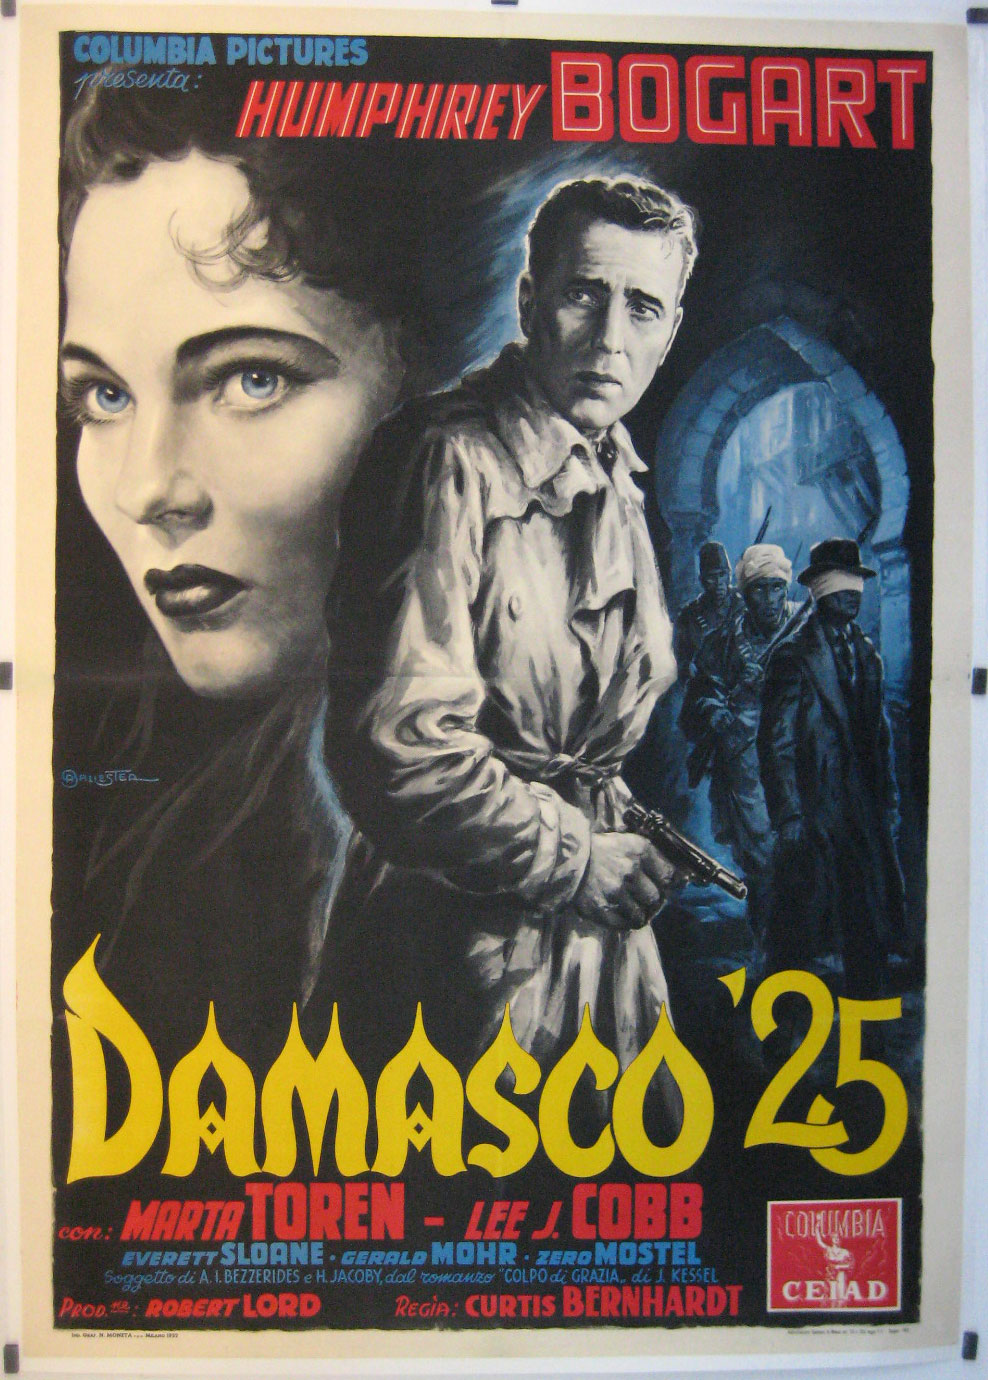 DAMASCO 25